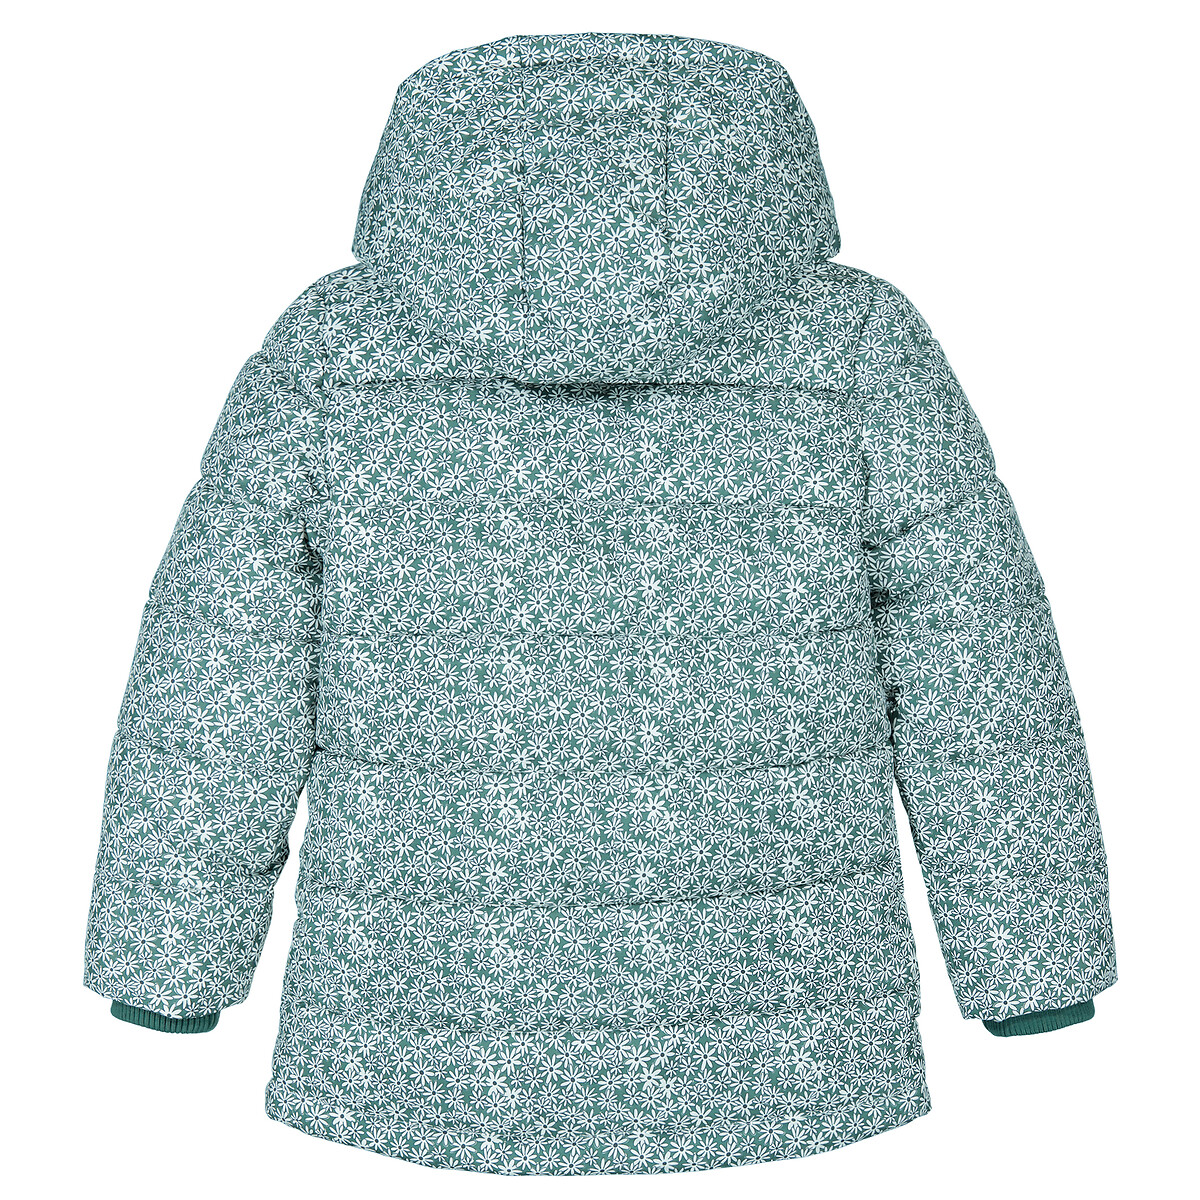 Куртка Стеганая утепленная с капюшоном цветочный принт 10 лет - 138 см зеленый LaRedoute, размер 10 лет - 138 см - фото 4